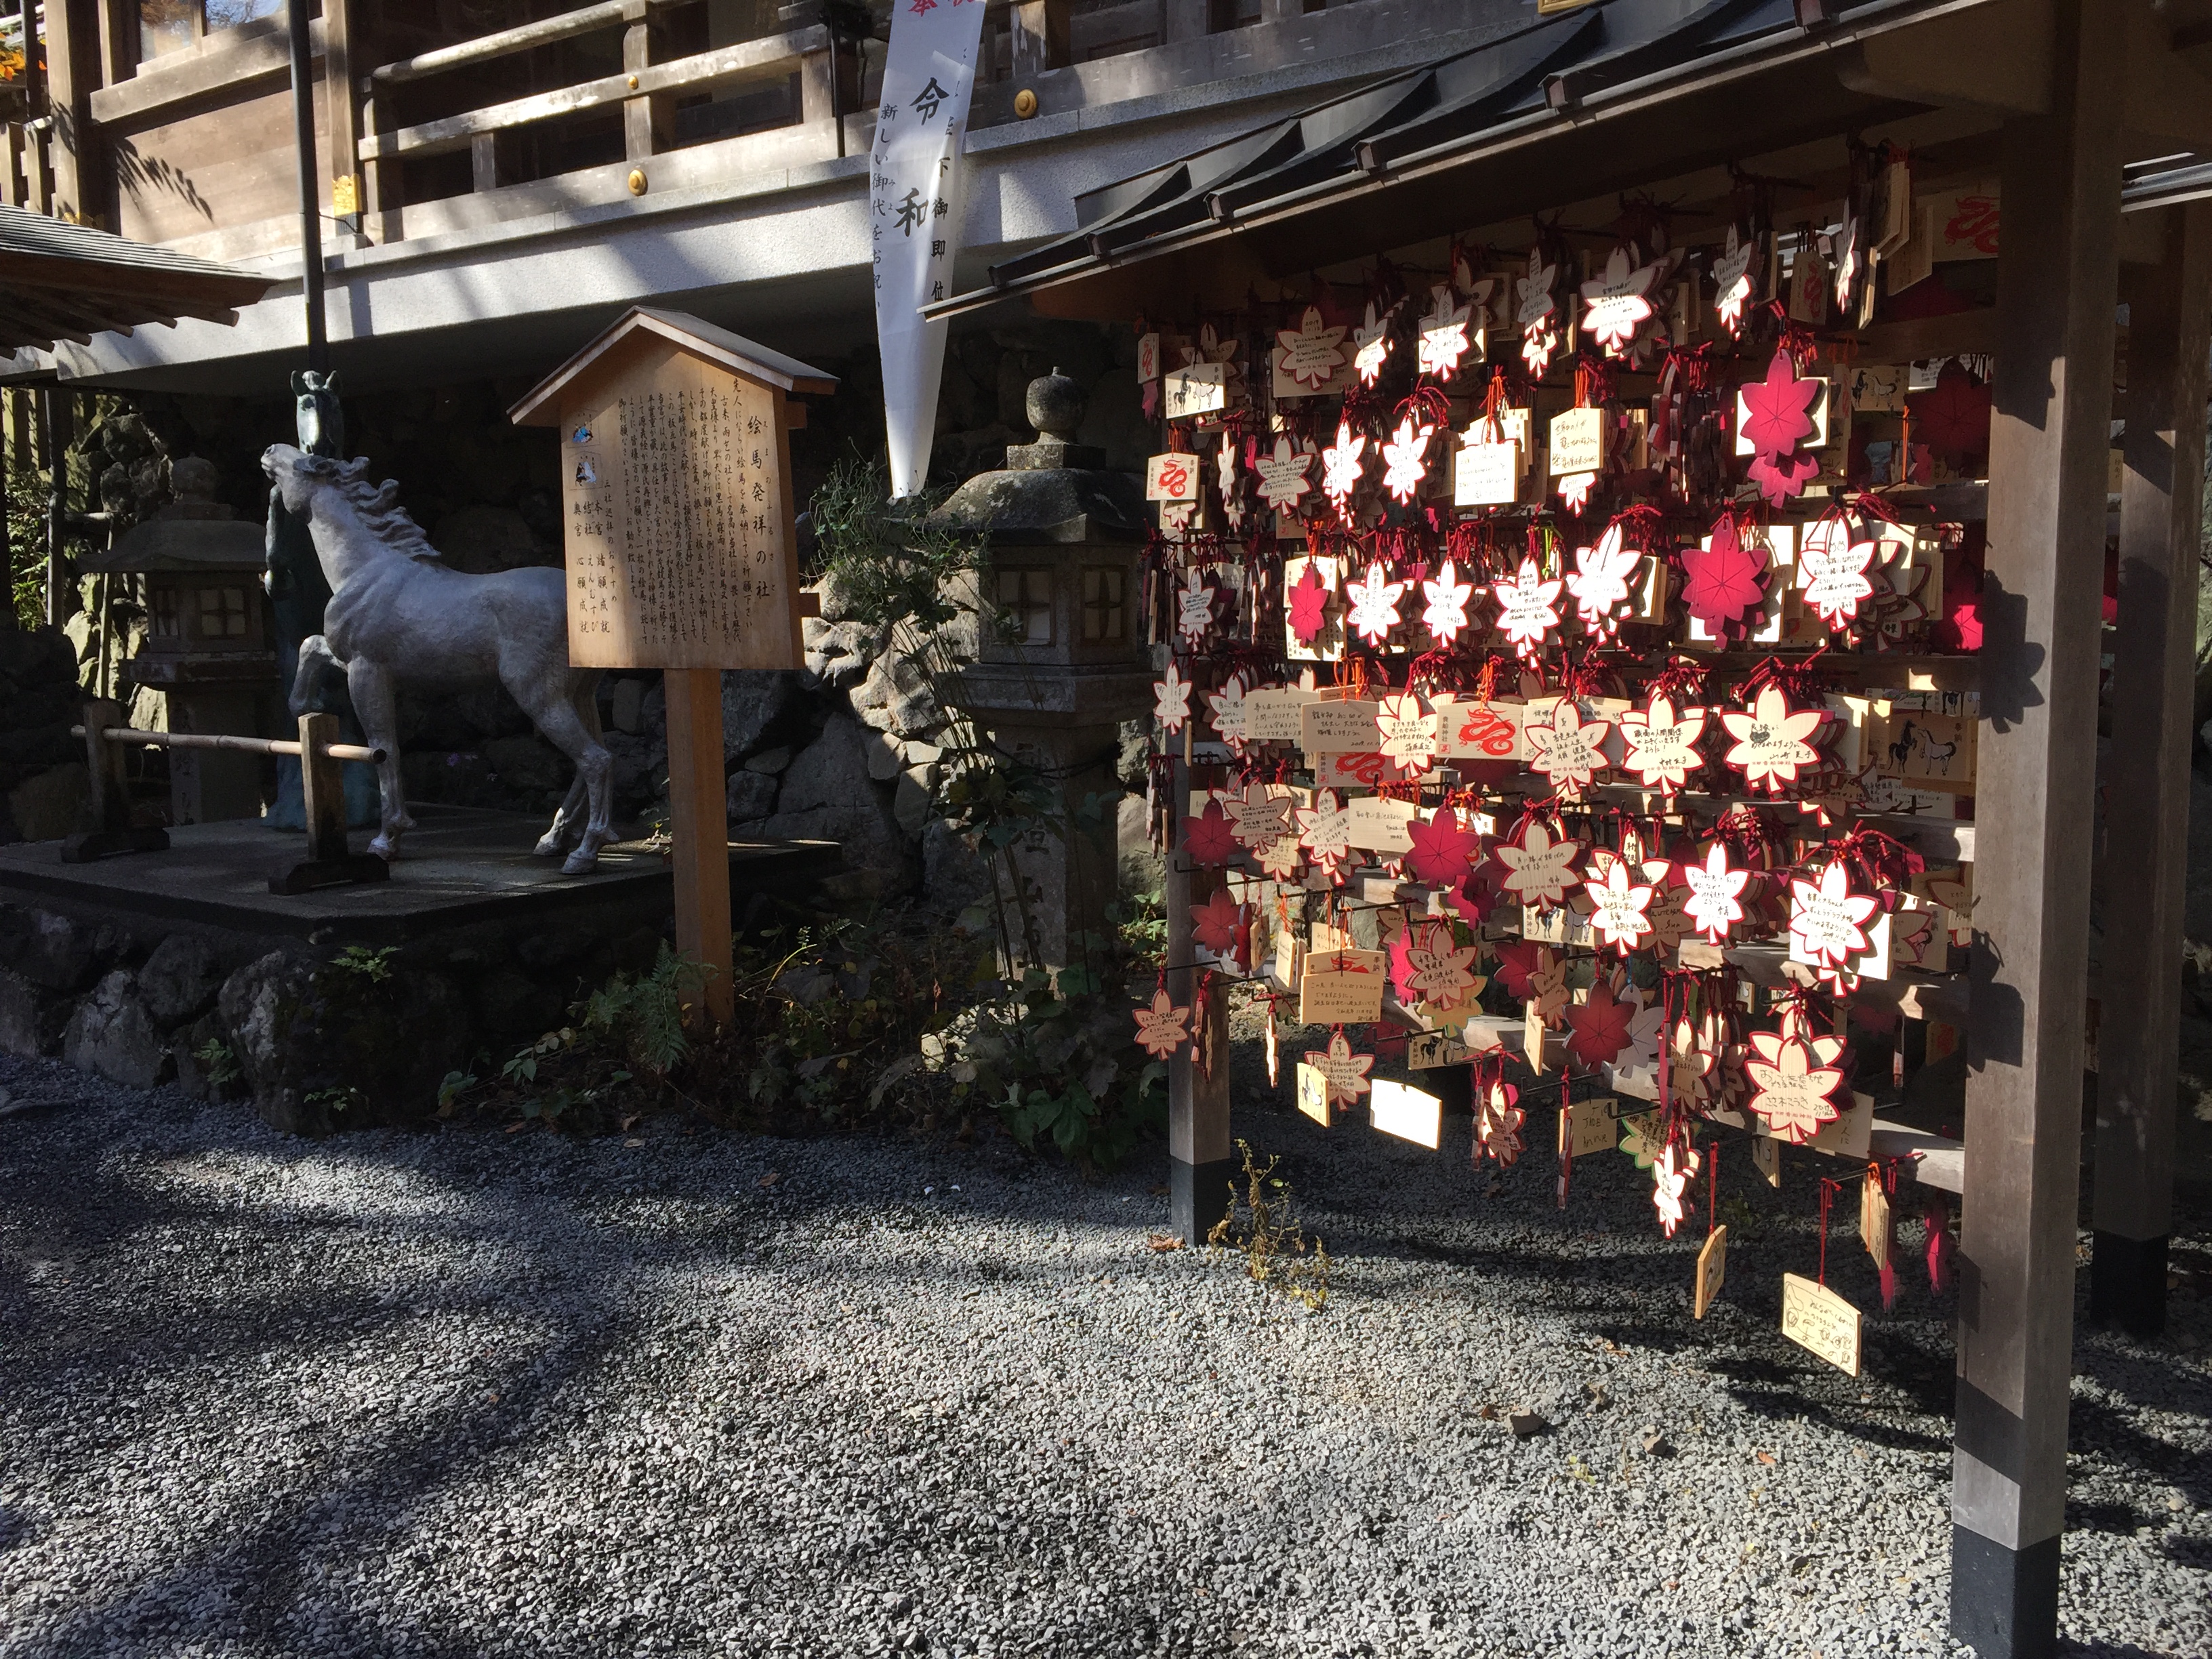 [Trip] 京都、貴船神社と鞍馬寺を巡る – 鞍馬寺は待ち行列ができるほどのパワースポット – ID3370 (2019/11月中旬) [2019/11/19] ID3370